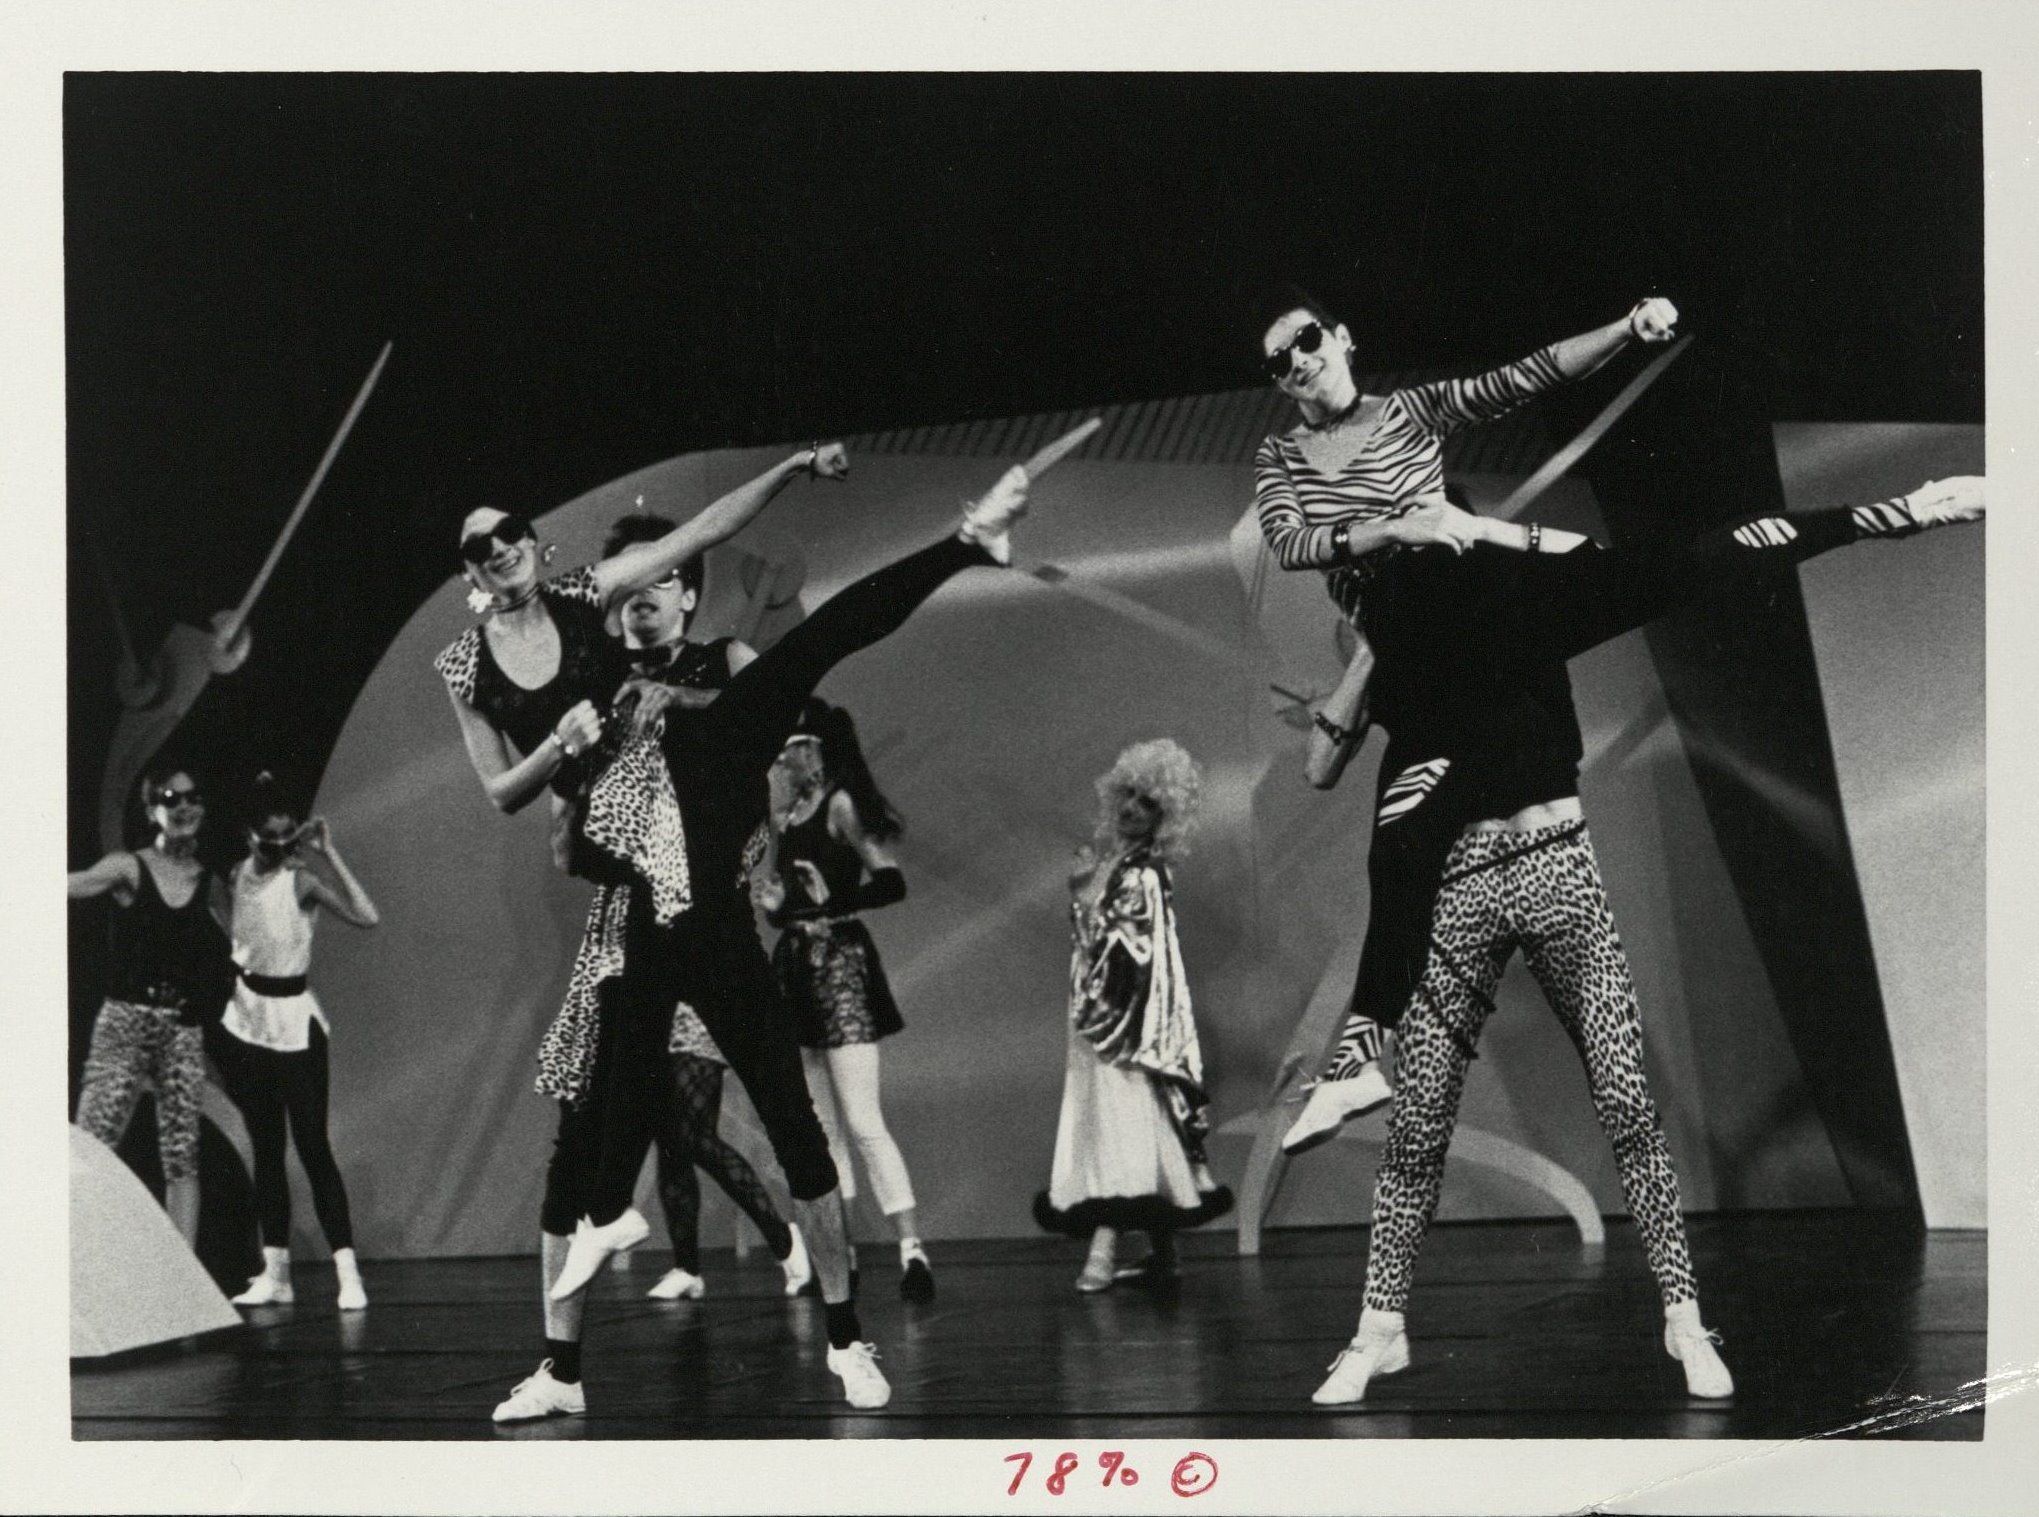 1986---conservatory-dancers-perform-madcracker.jpg